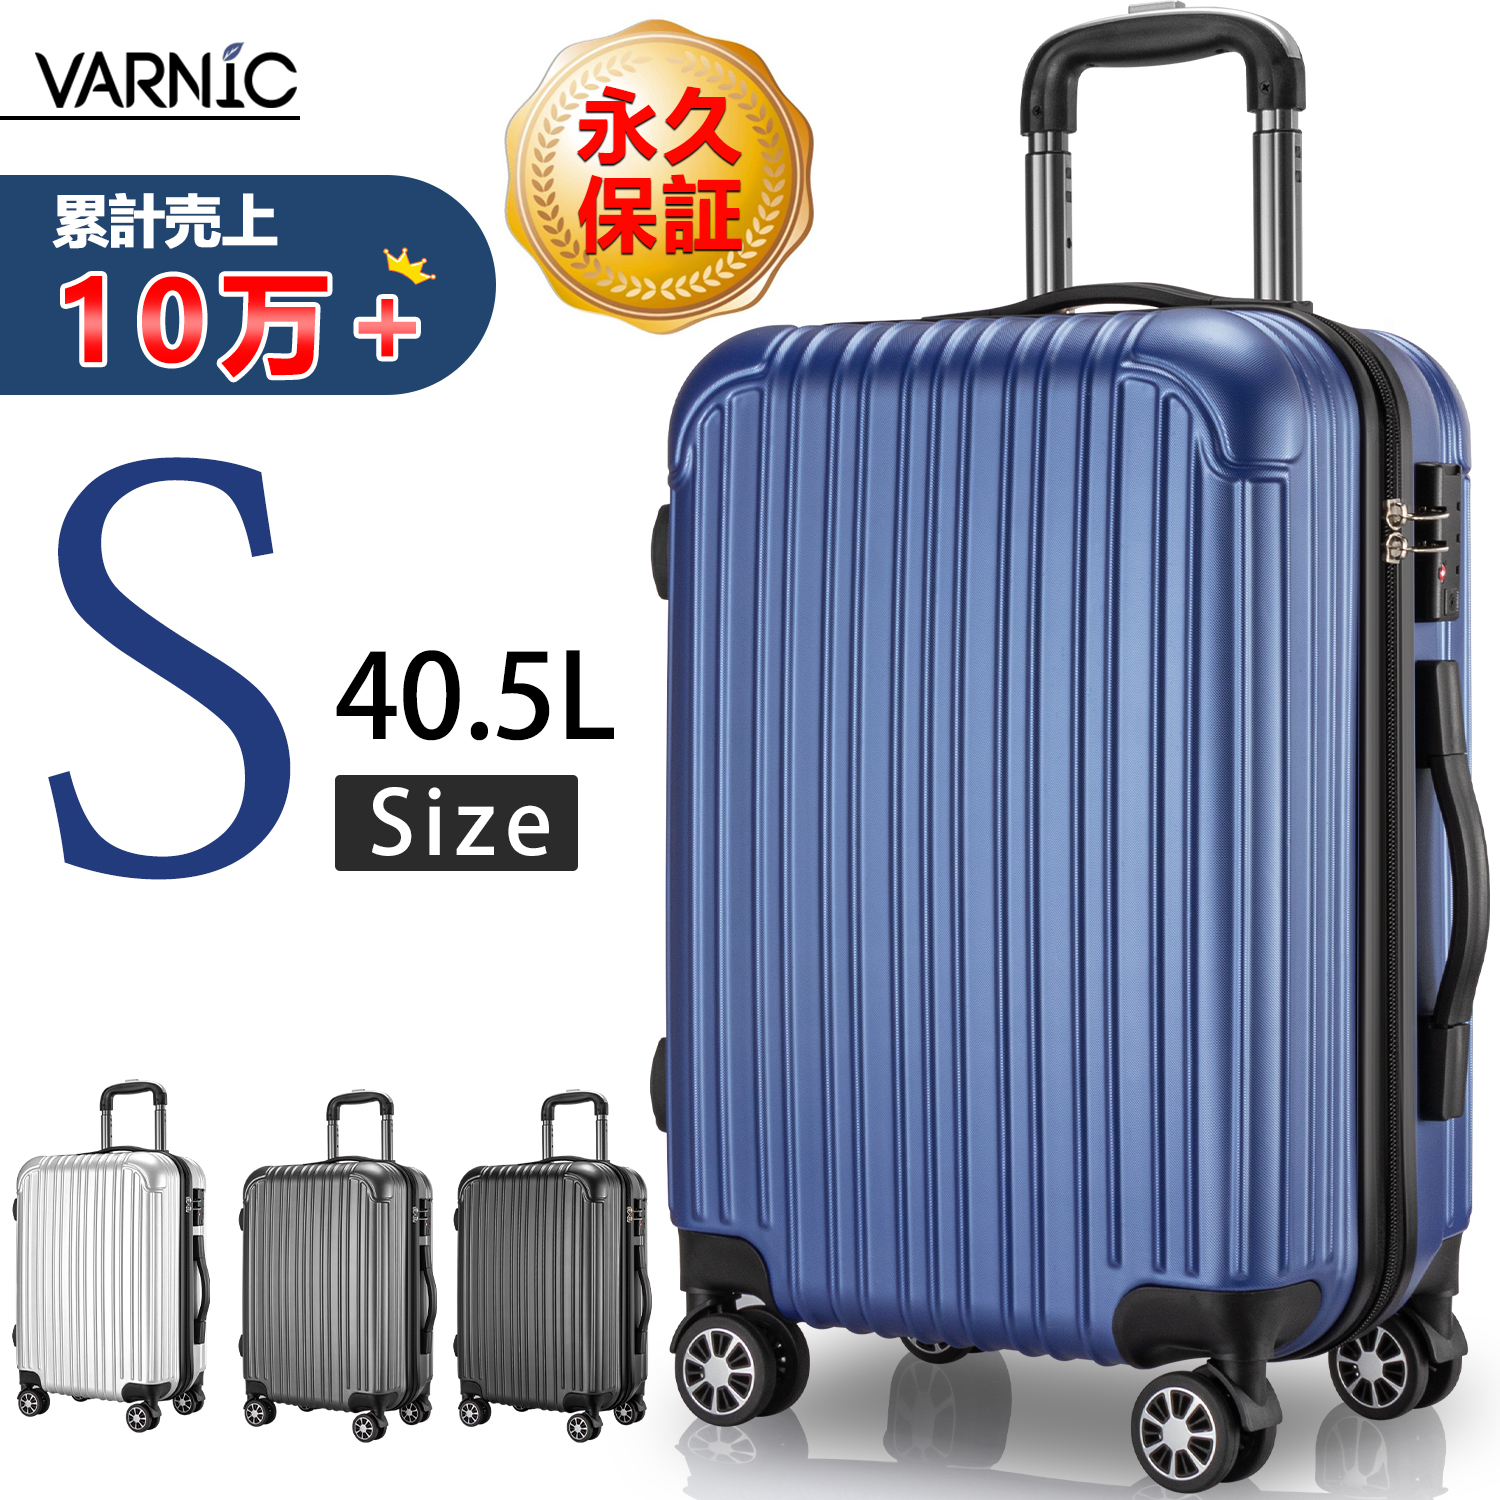 【楽天市場】【77%OFF&割引クーポン】VARNIC スーツケース 